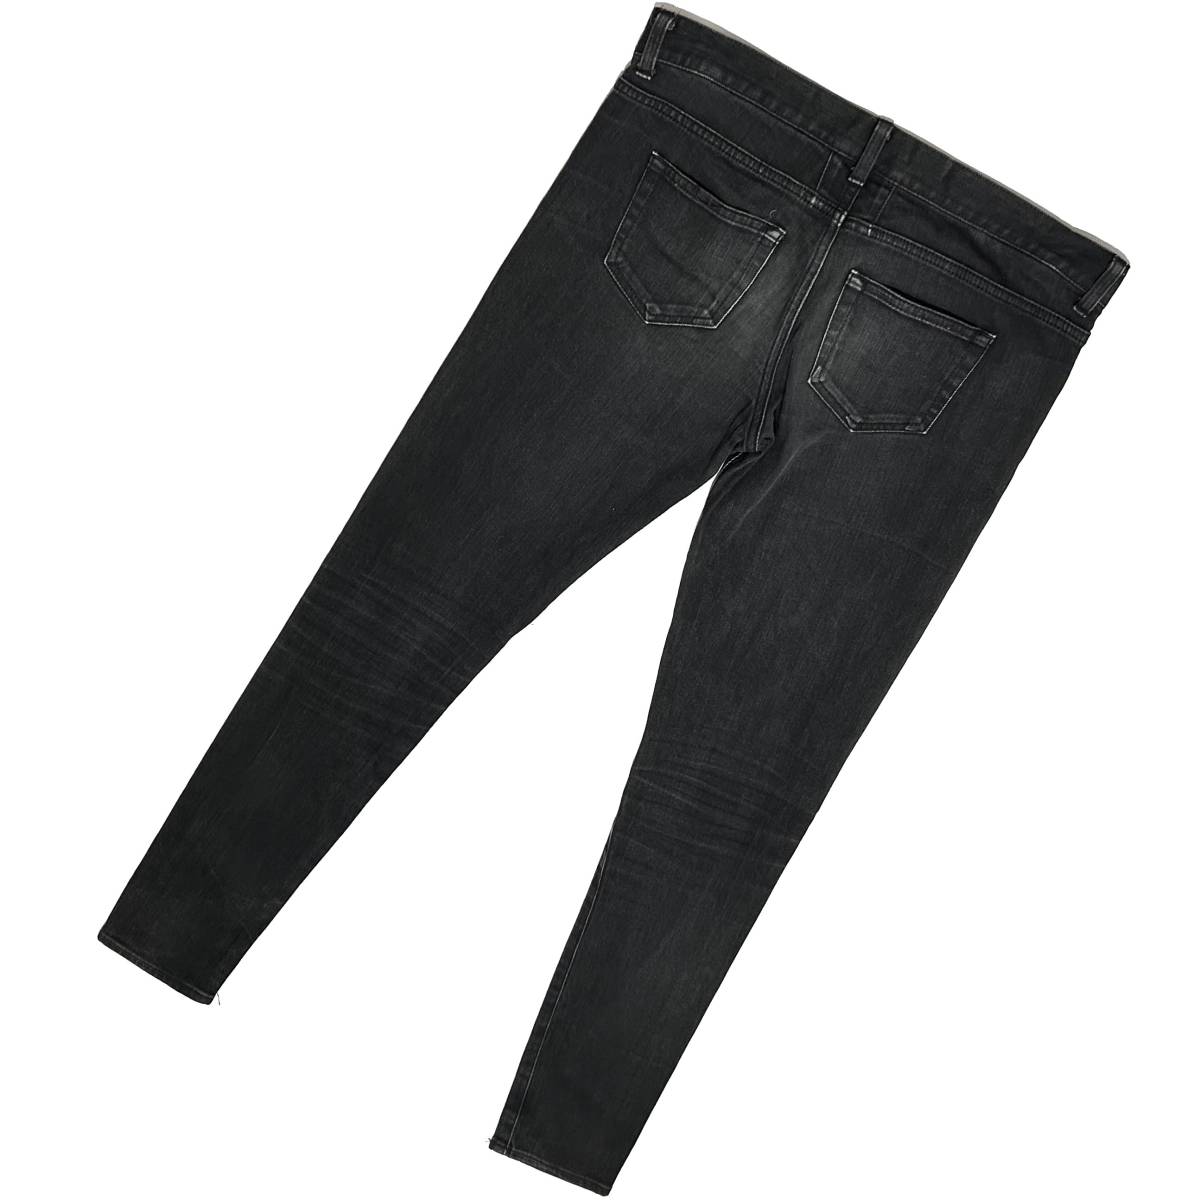  внутренний стандартный товар SAINT LAURENT PARIS стрейч обтягивающие джинсы брюки 30 черный солнечный rolan Париж подлинный товар Эдди потертость man Celine 